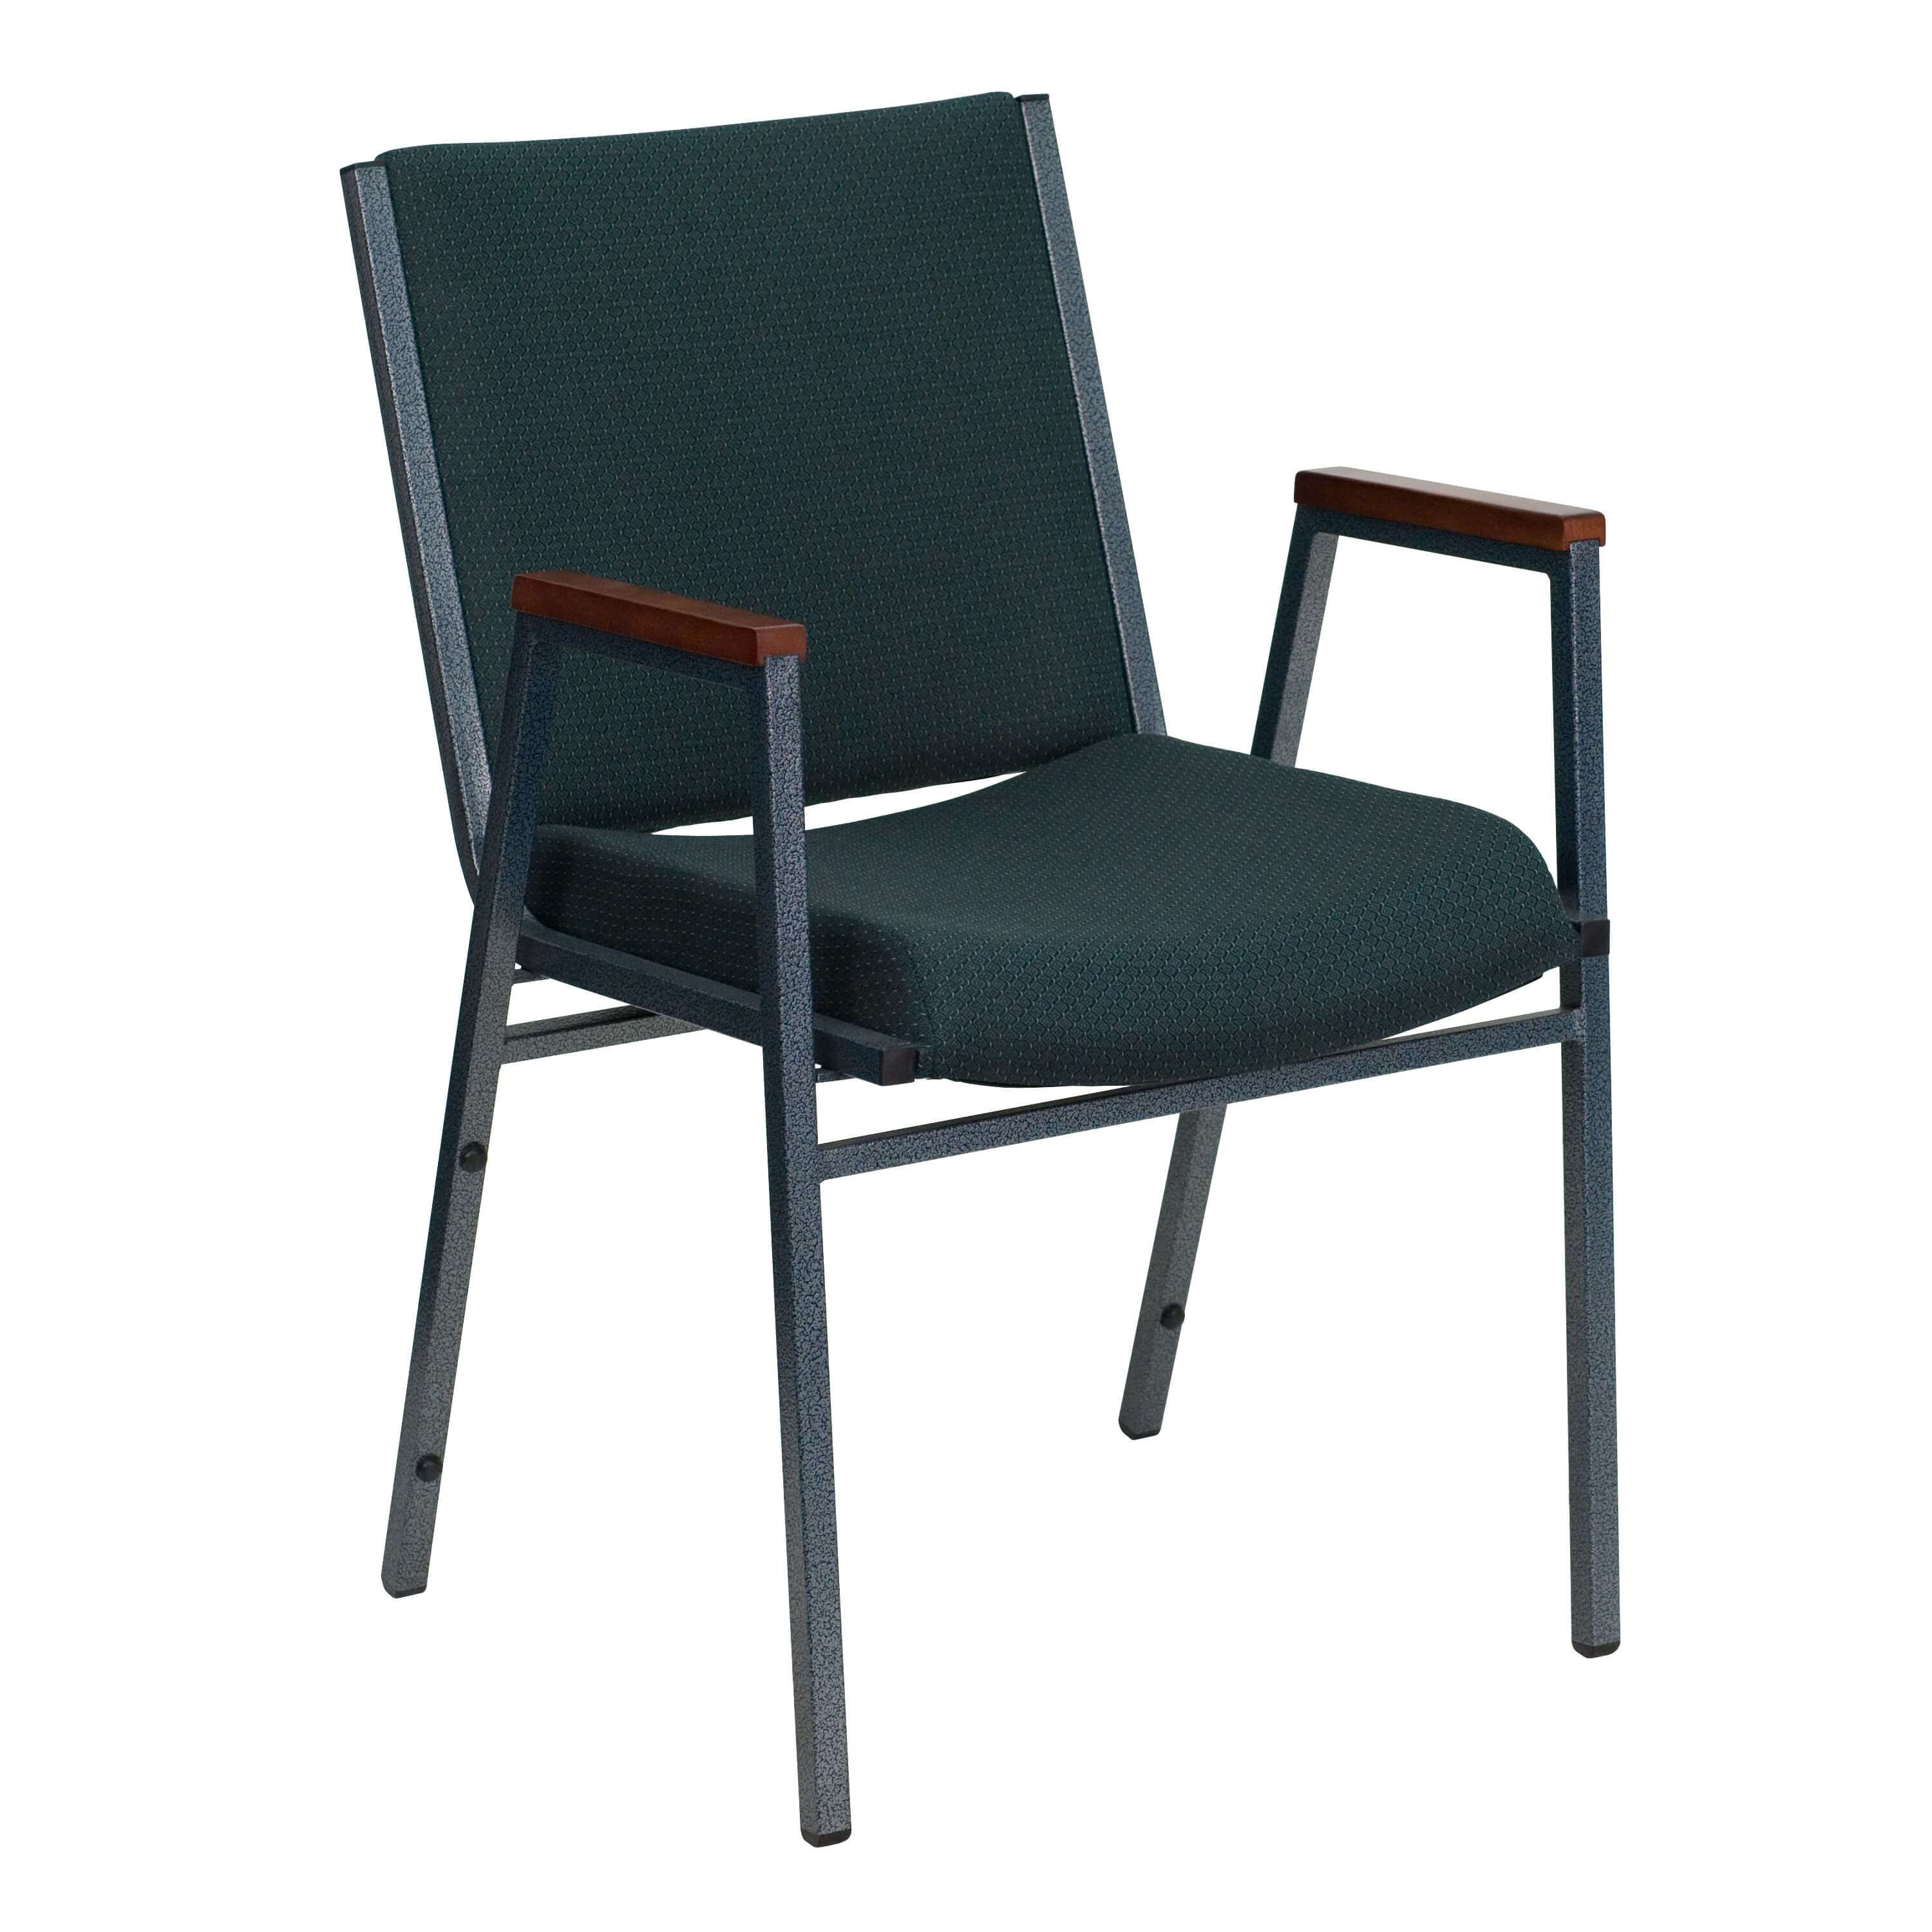 Stackable chairs CUB XU 60154 GN GG FLA